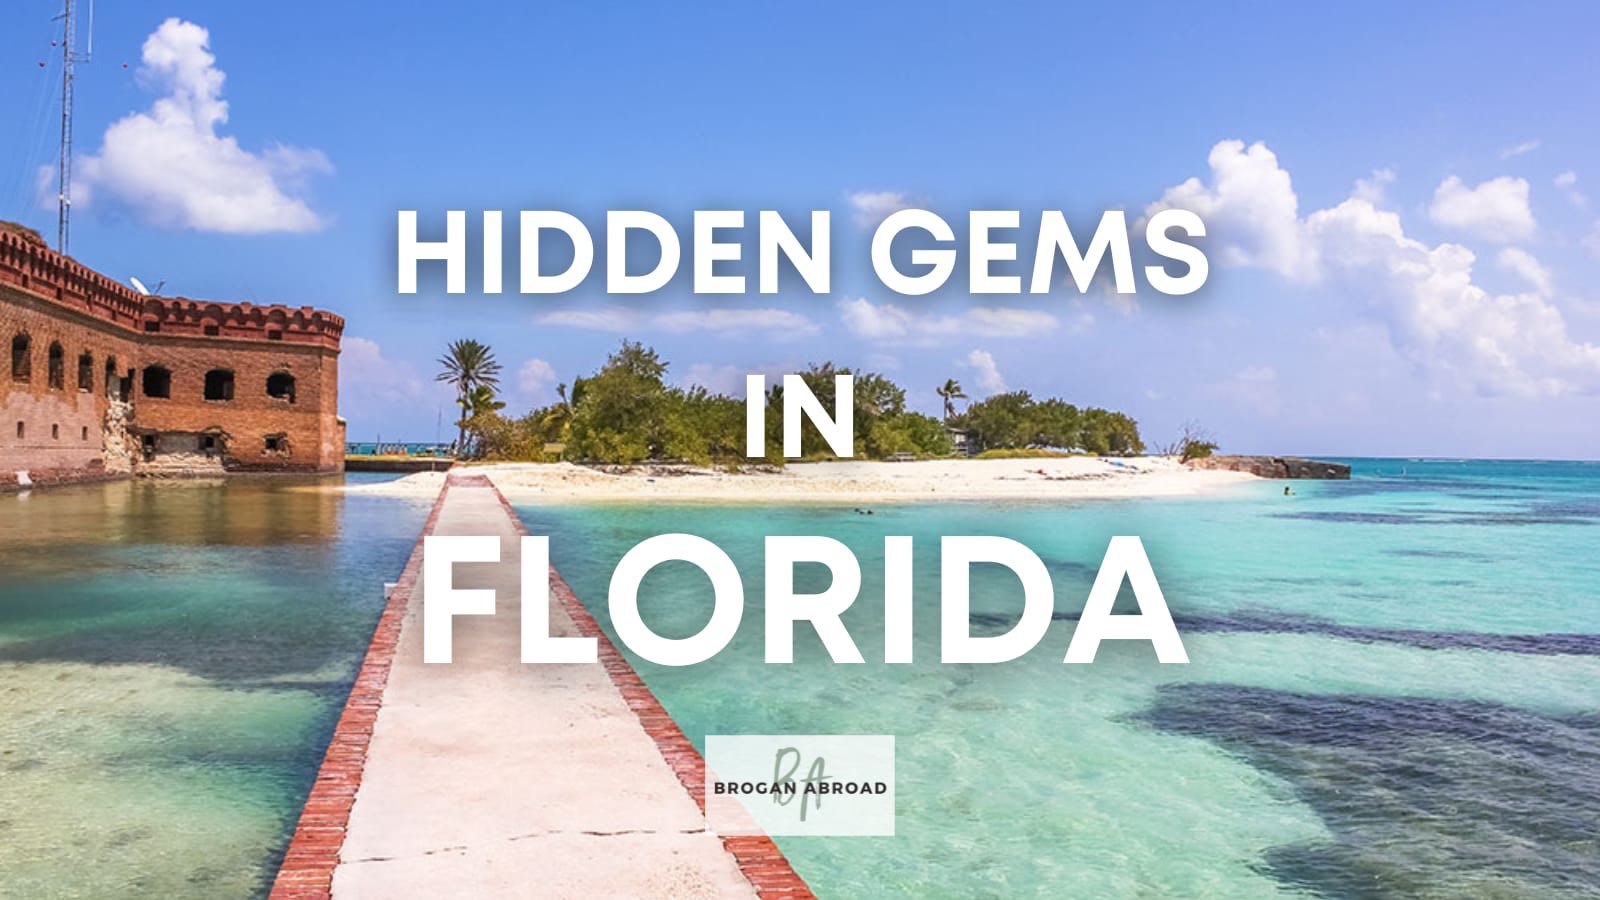 Best Hiking Trails in Florida - Treasure Island Resort Condominium